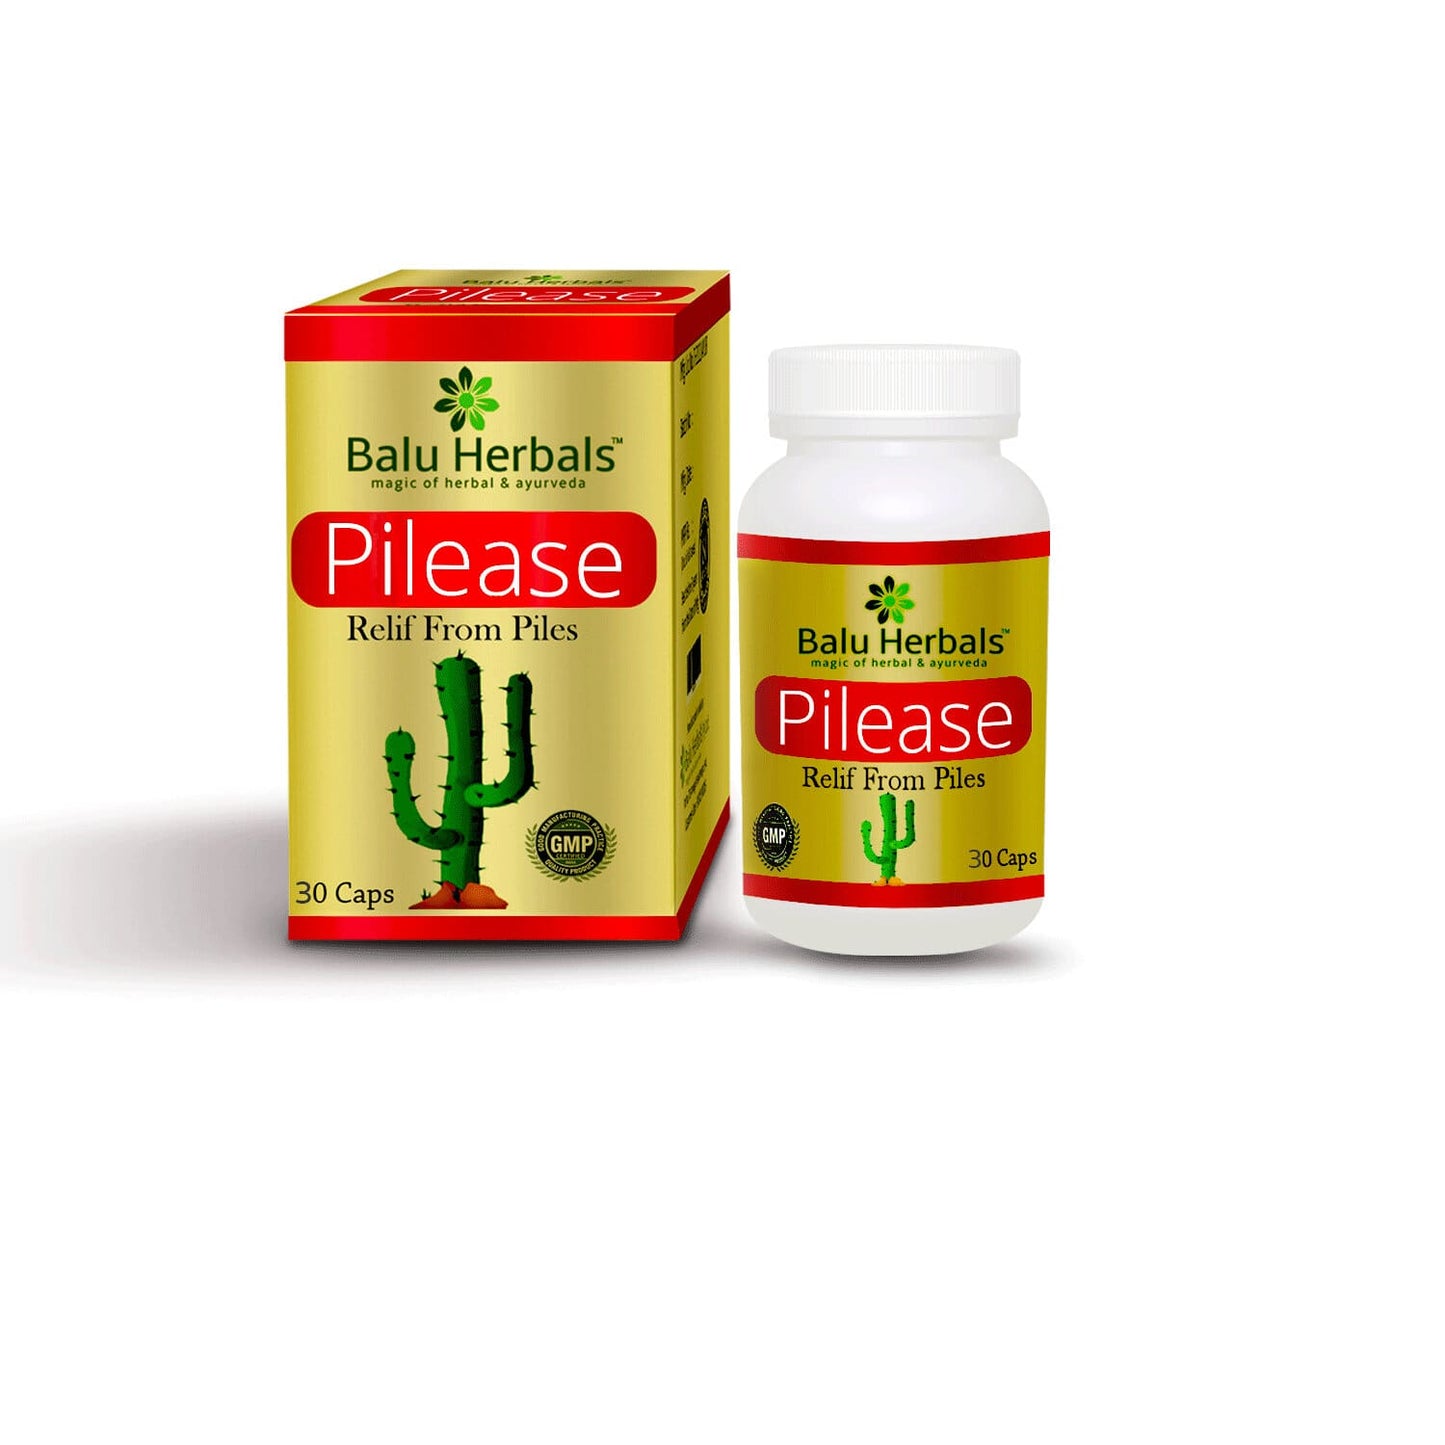 Buy Balu Herbals Pilease Capsules For Piles, Piles Capsules, Piles Home Treatment - 30caps